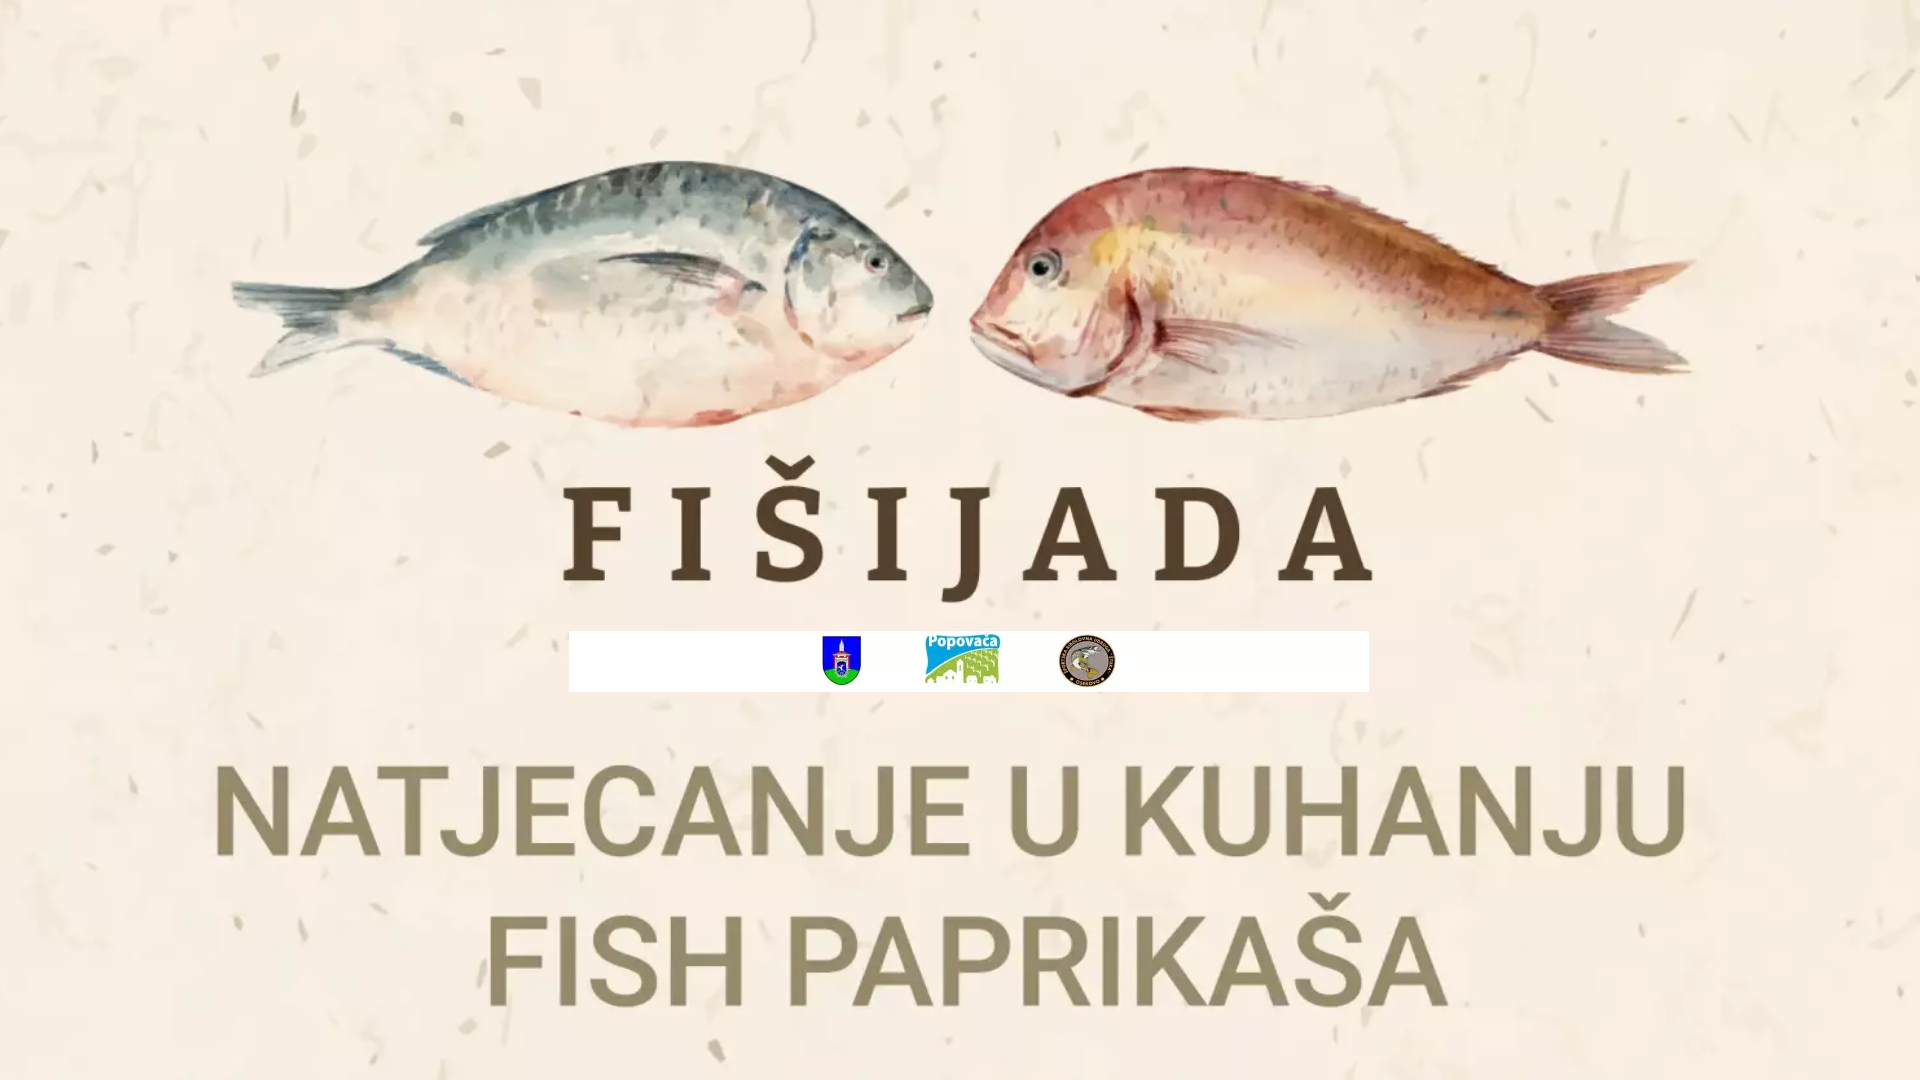 Natjecanje u kuhanju Fish paprikaša u Osekovu